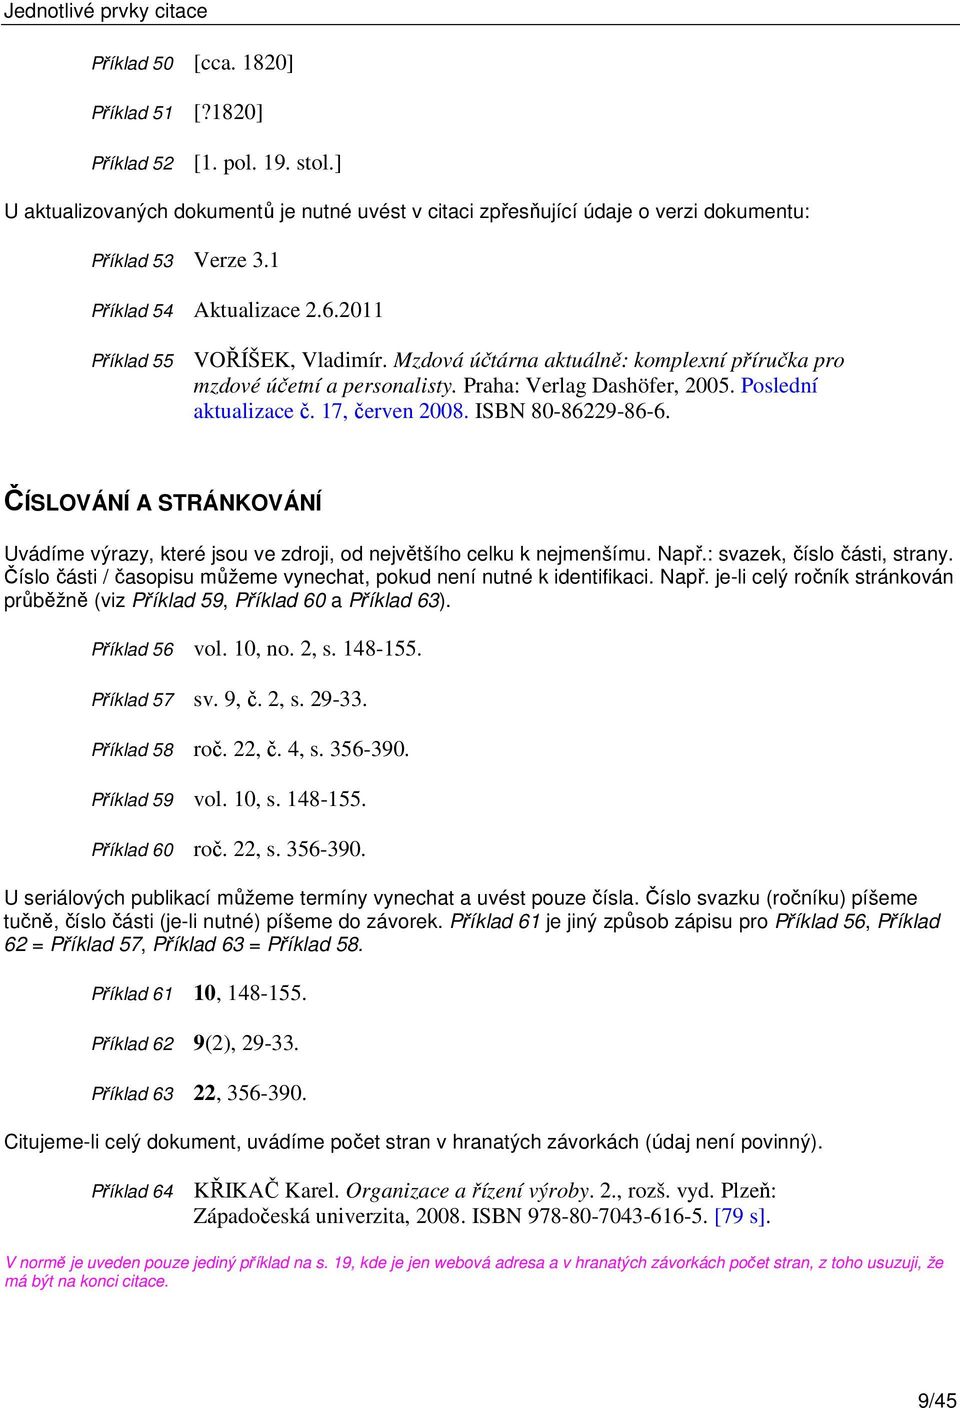 Mzdová účtárna aktuálně: komplexní příručka pro mzdové účetní a personalisty. Praha: Verlag Dashöfer, 2005. Poslední aktualizace č. 17, červen 2008. ISBN 80-86229-86-6.